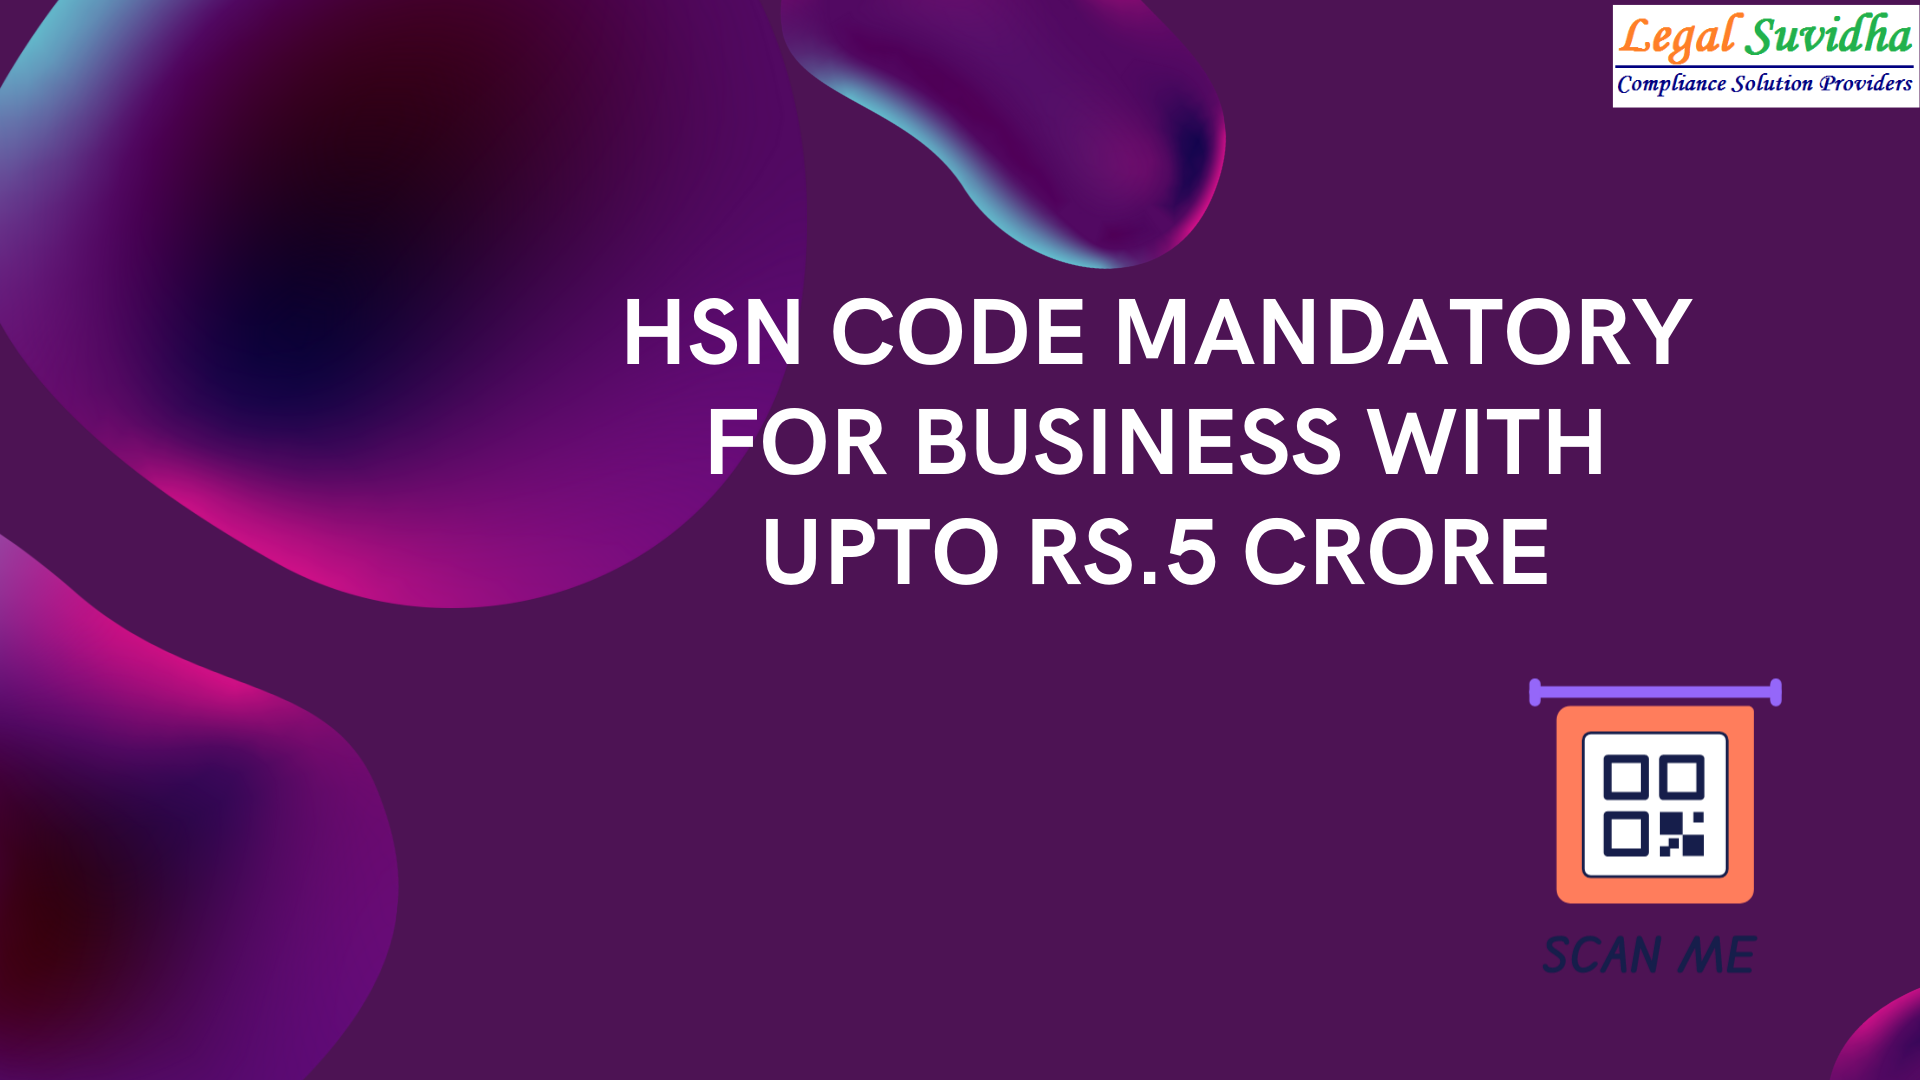 Mandatory Reporting of HSN Code